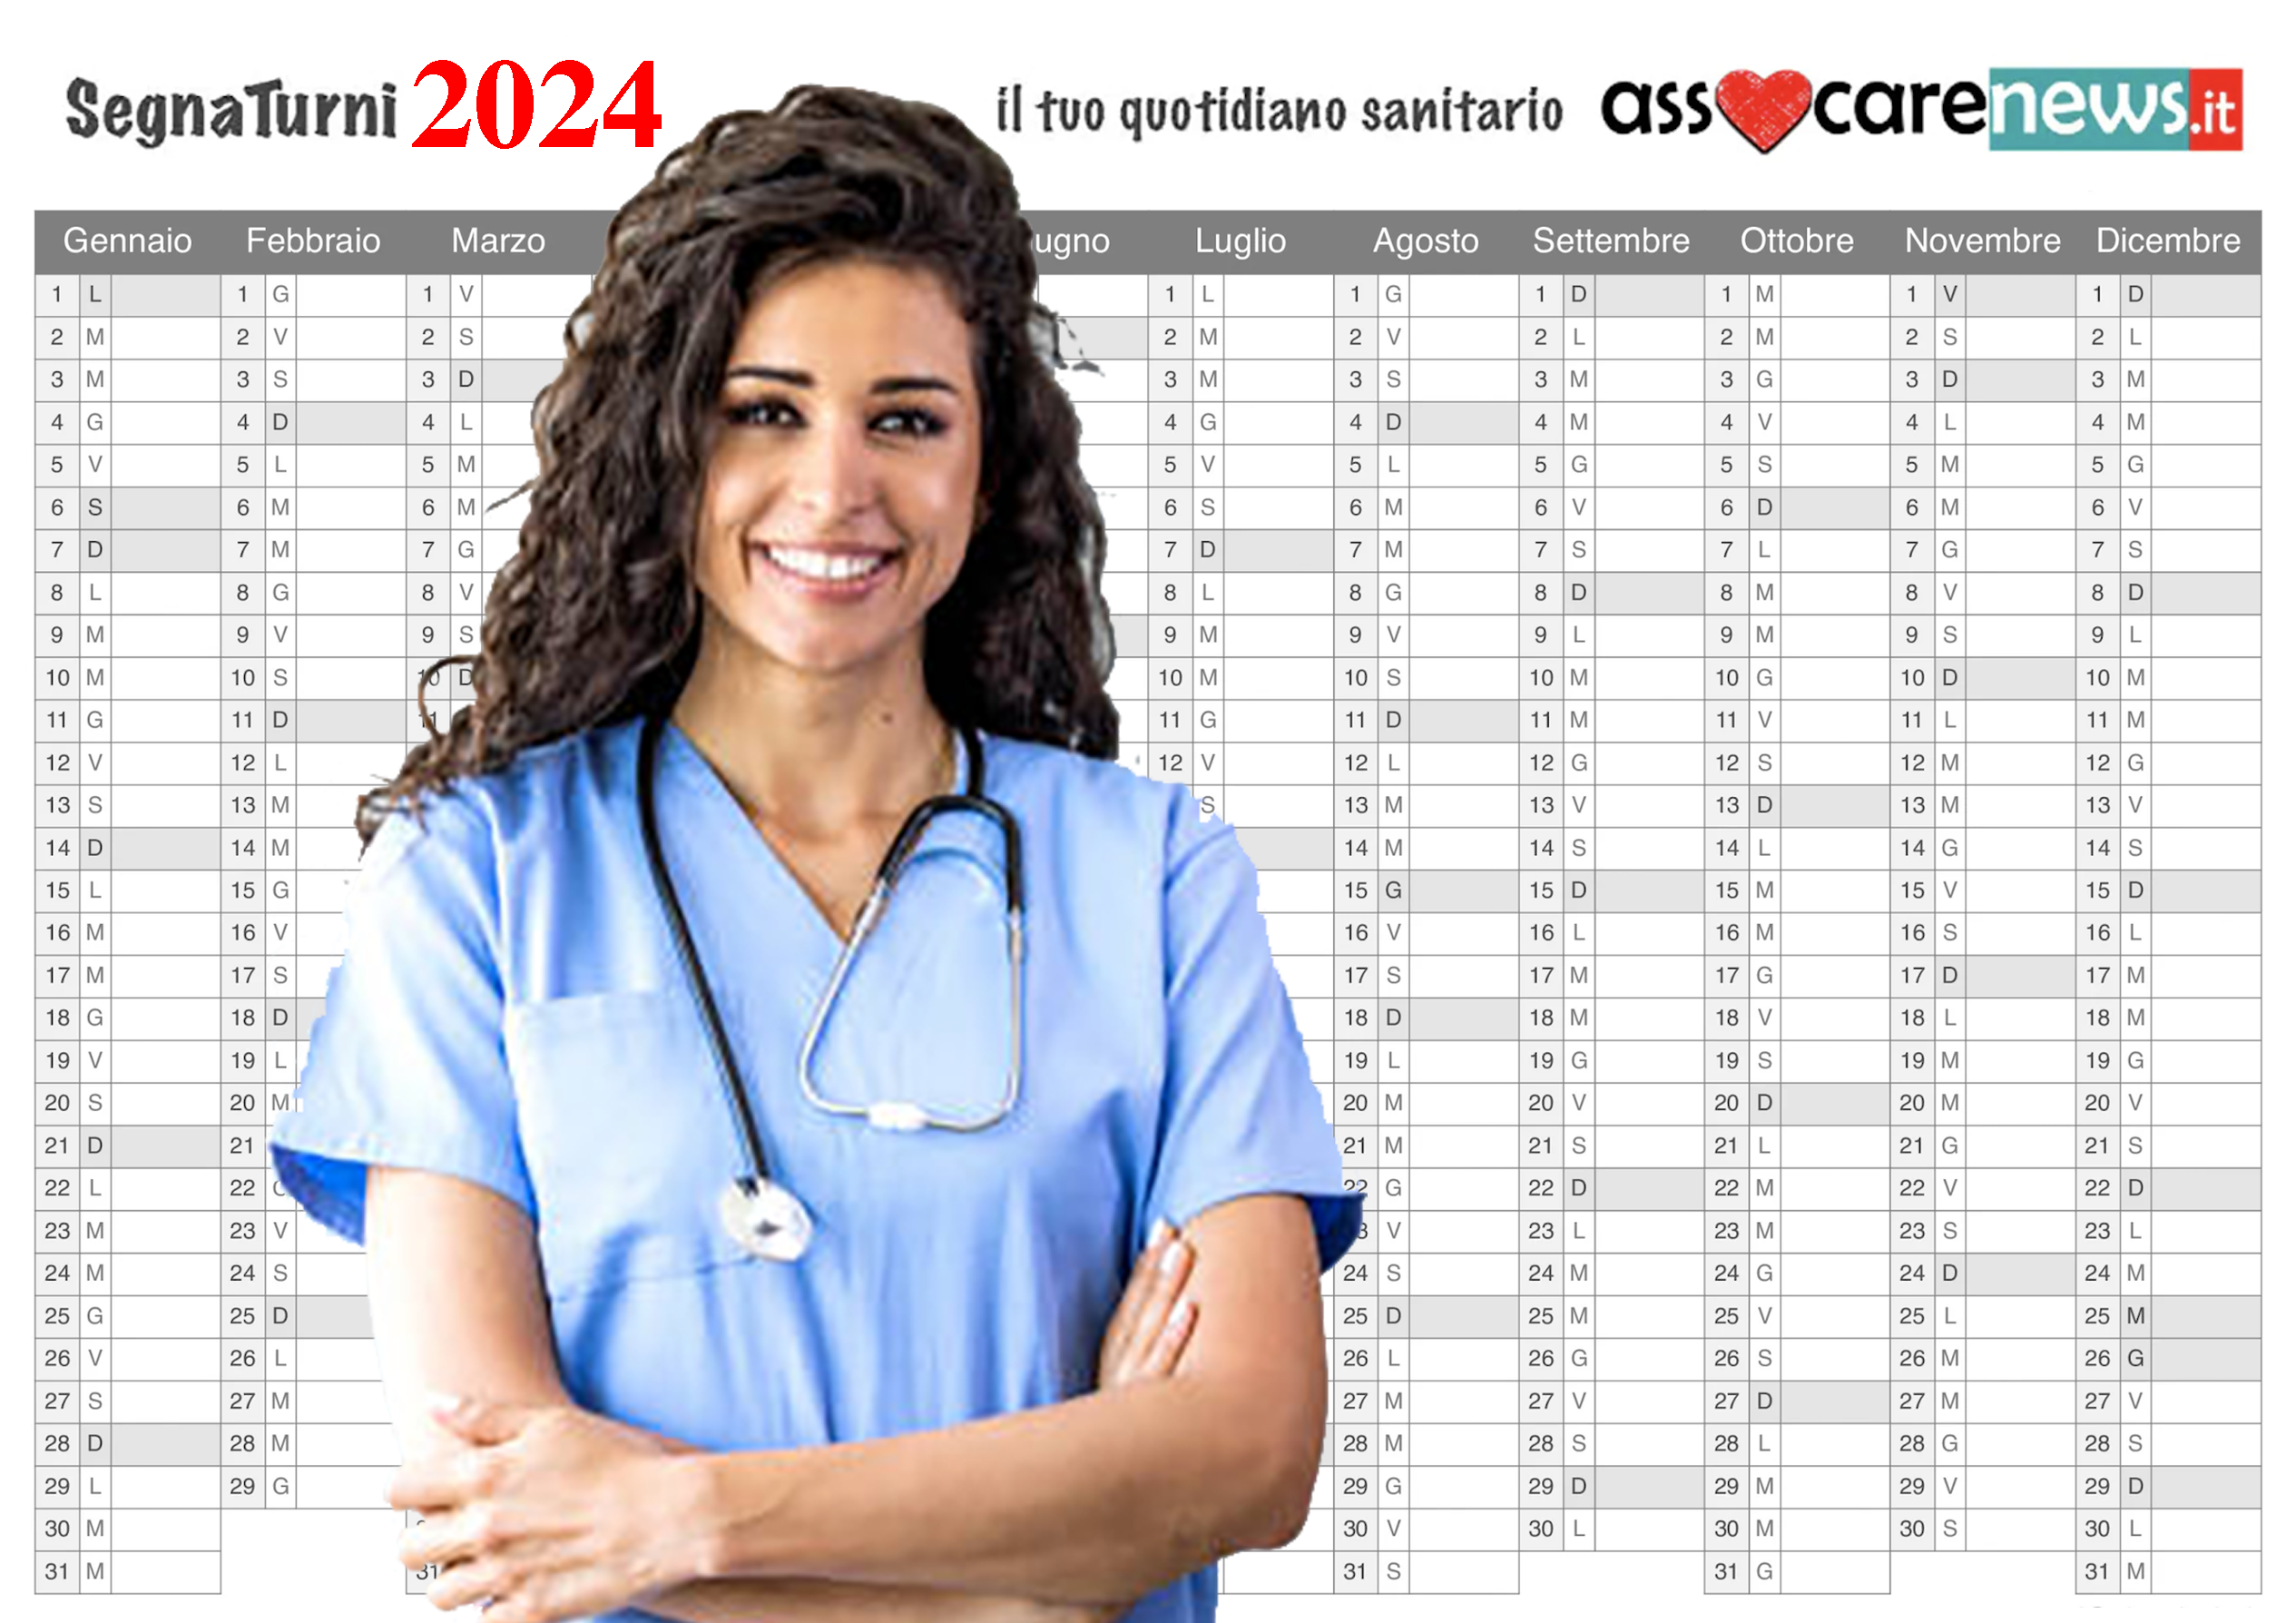 Segnaturni 2024 per Medici, Infermieri, Ostetriche, OSS e Professioni  Sanitarie. - Quotidiano Sanitario